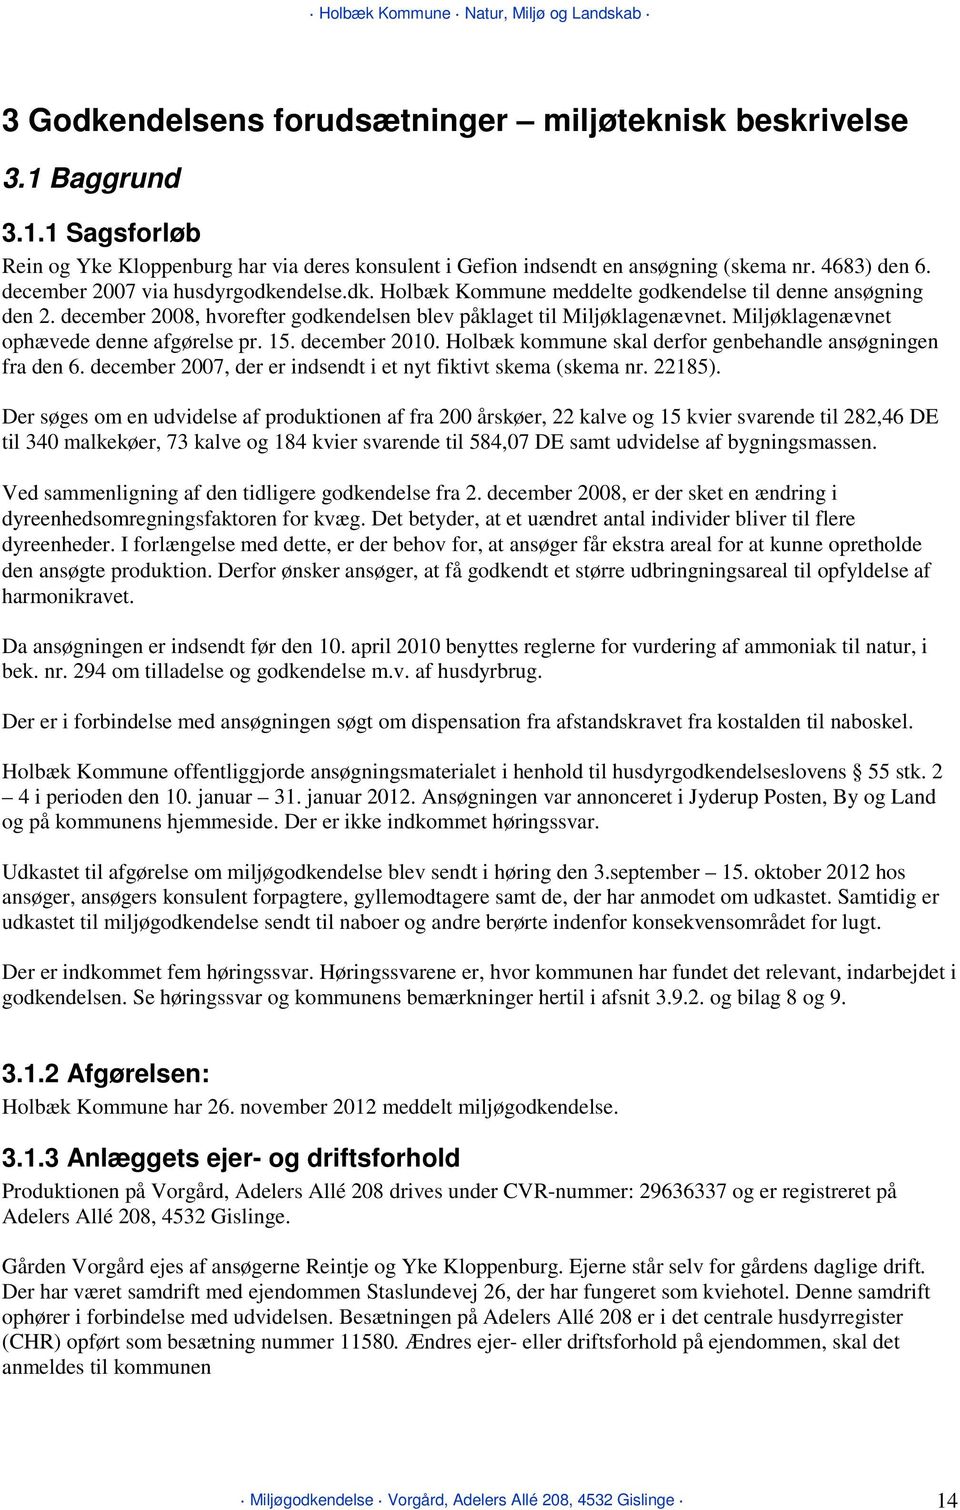 Miljøklagenævnet ophævede denne afgørelse pr. 15. december 2010. Holbæk kommune skal derfor genbehandle ansøgningen fra den 6. december 2007, der er indsendt i et nyt fiktivt skema (skema nr. 22185).